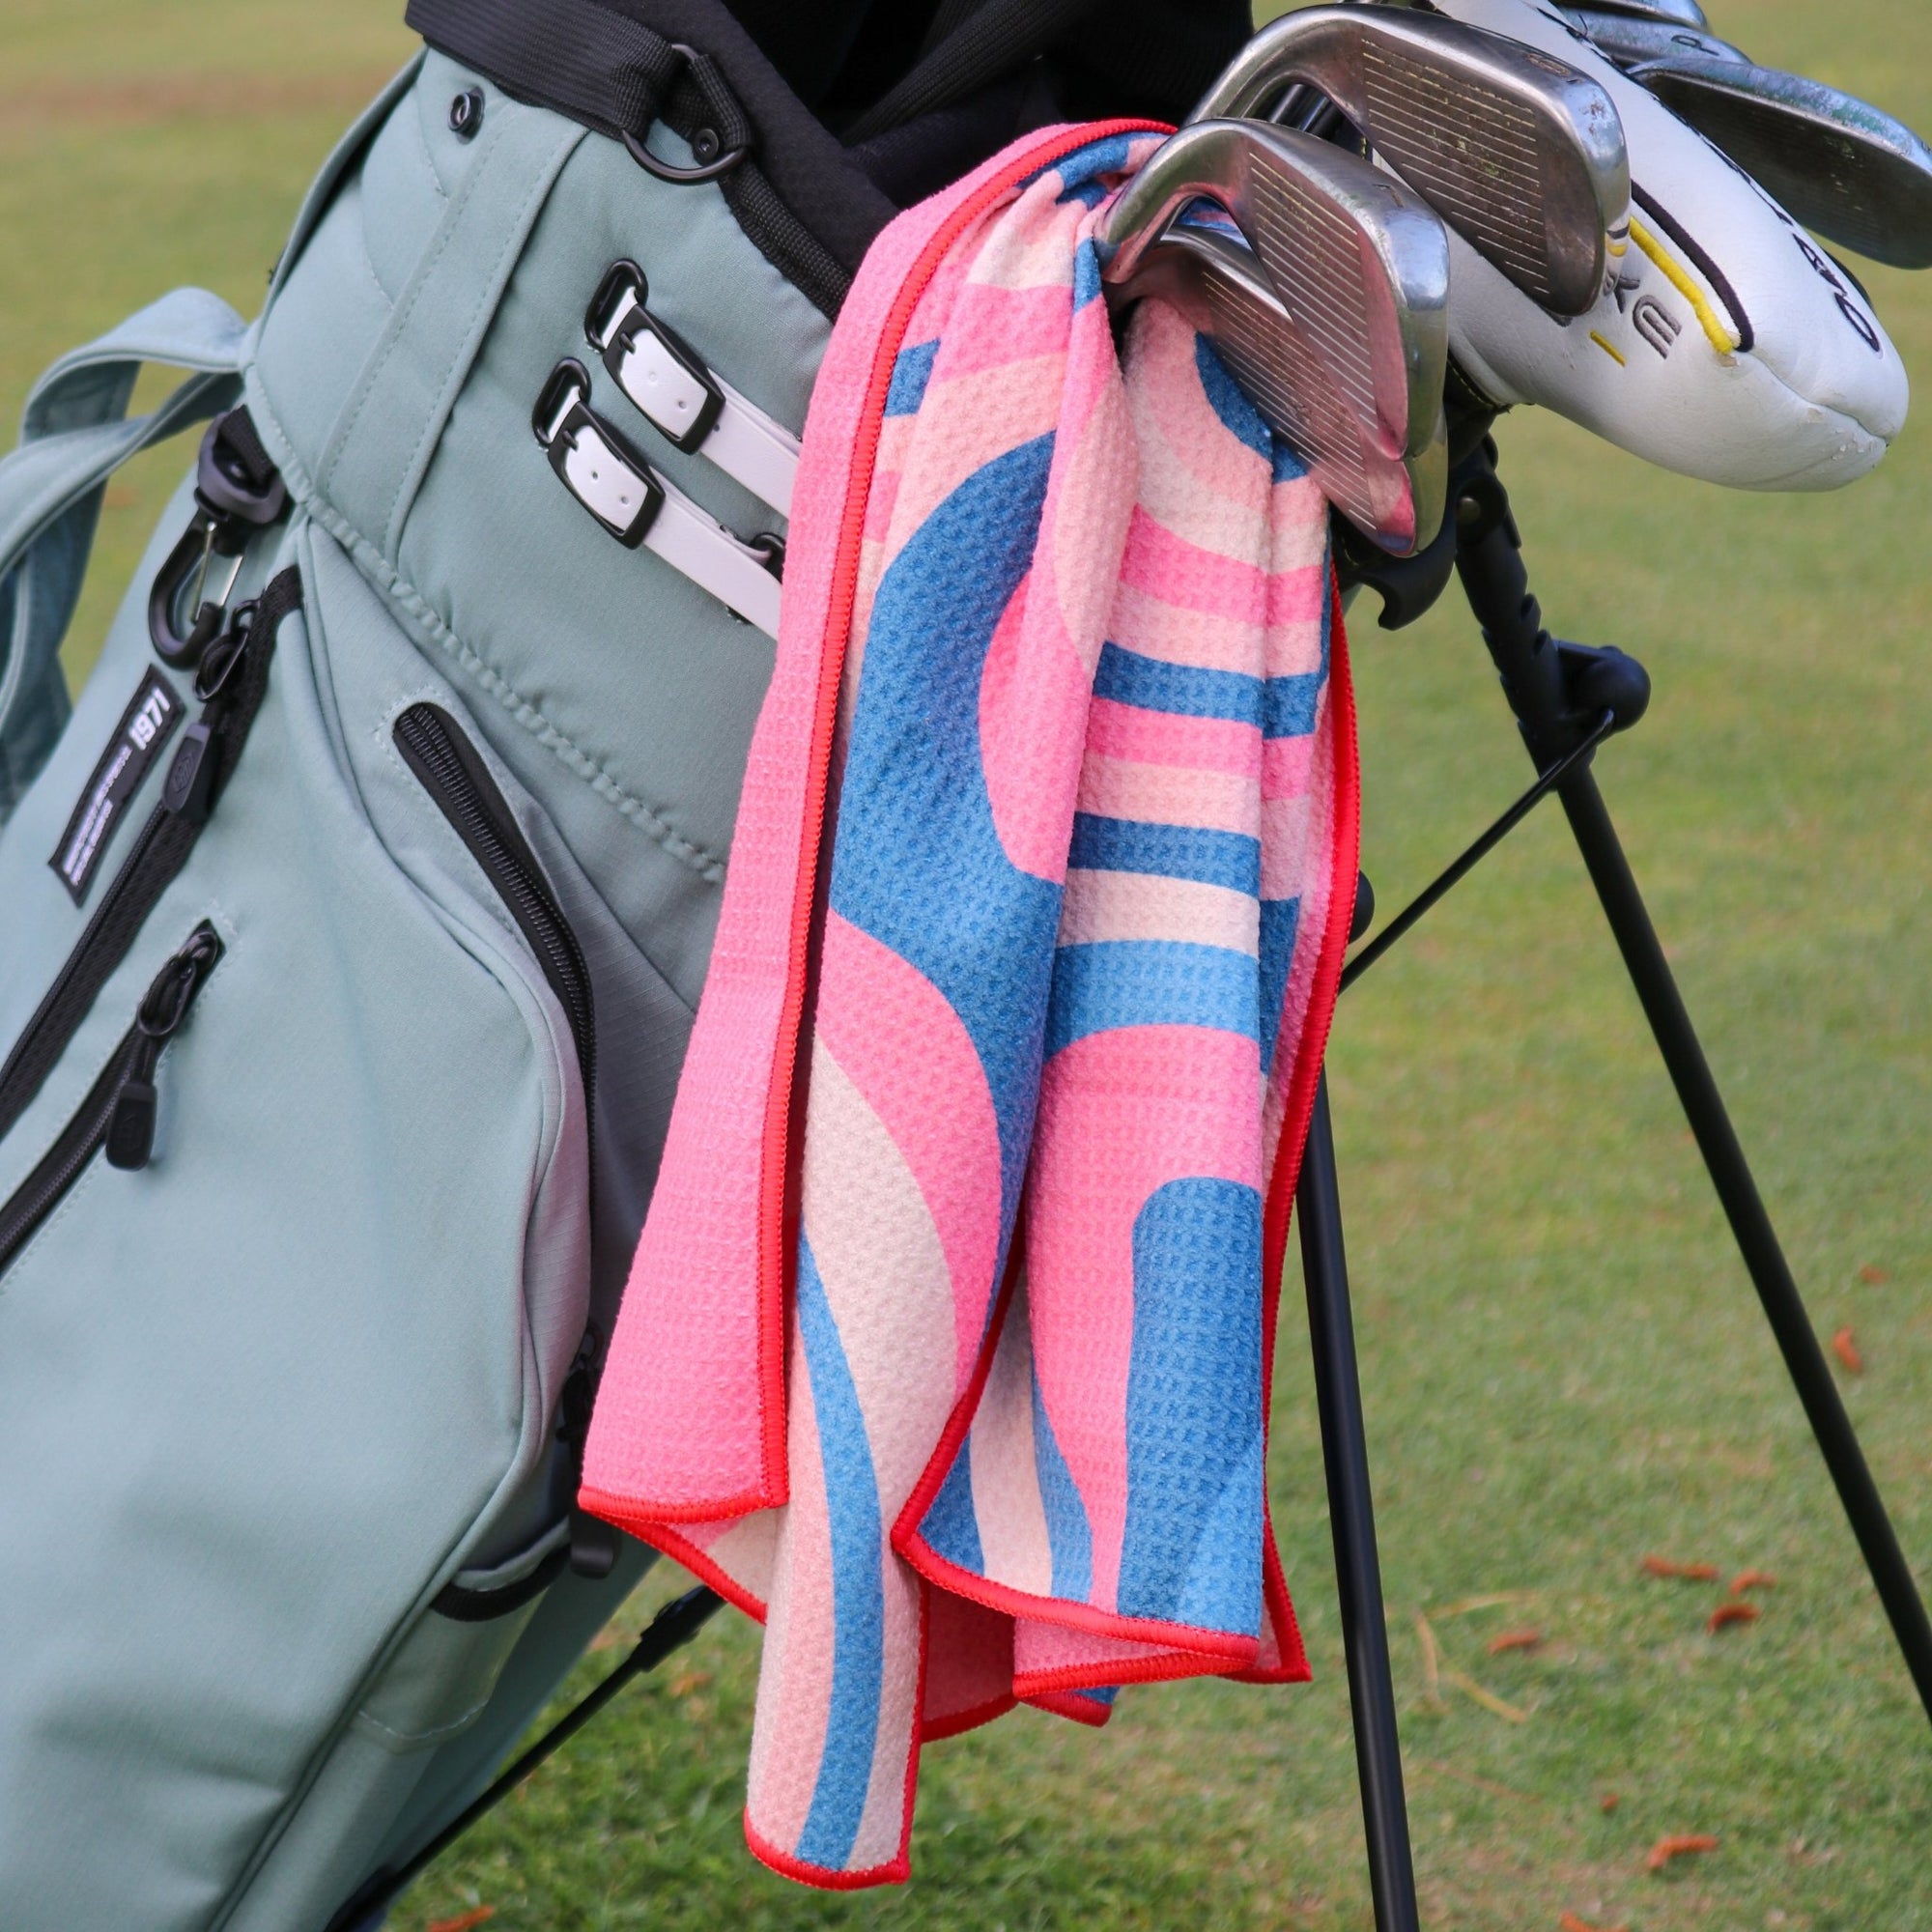 Myriad Sands | Fairway Fittings - Women's Golf & Athleisure Wear Boutique.